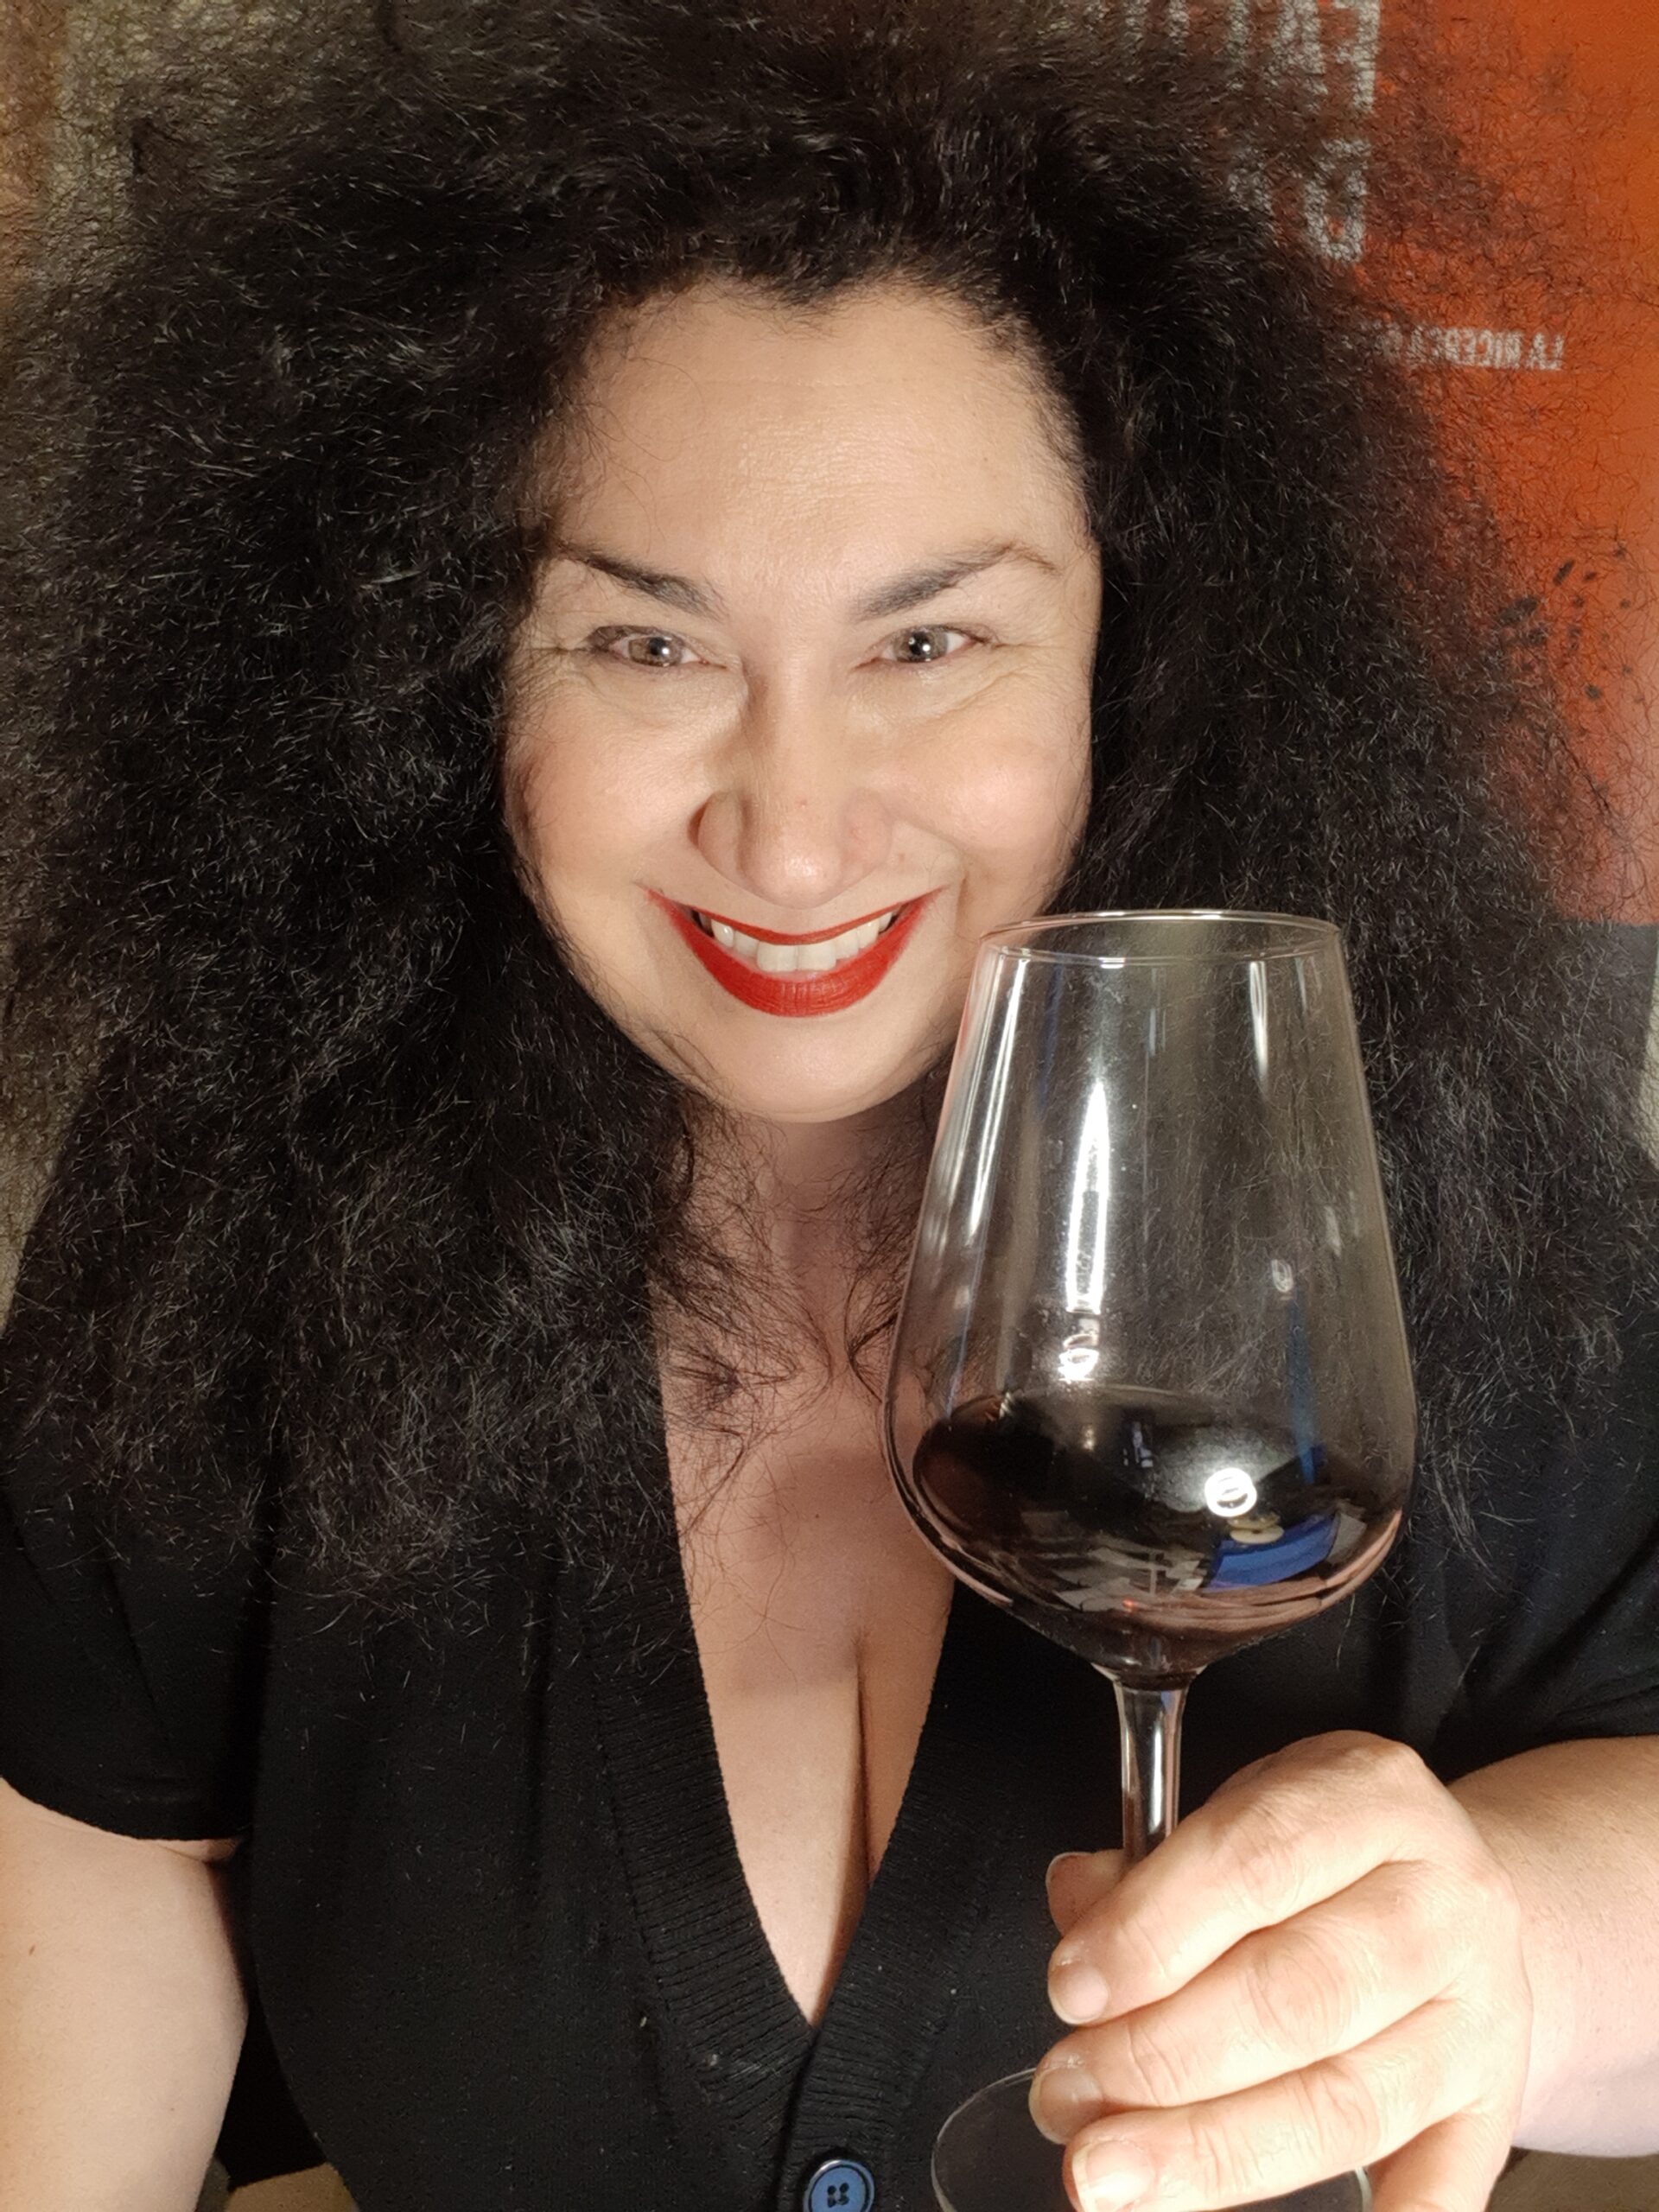 Carol Agostini titolare Agenzia FoodandWineAngels mentre degusta un vino rosso toscano